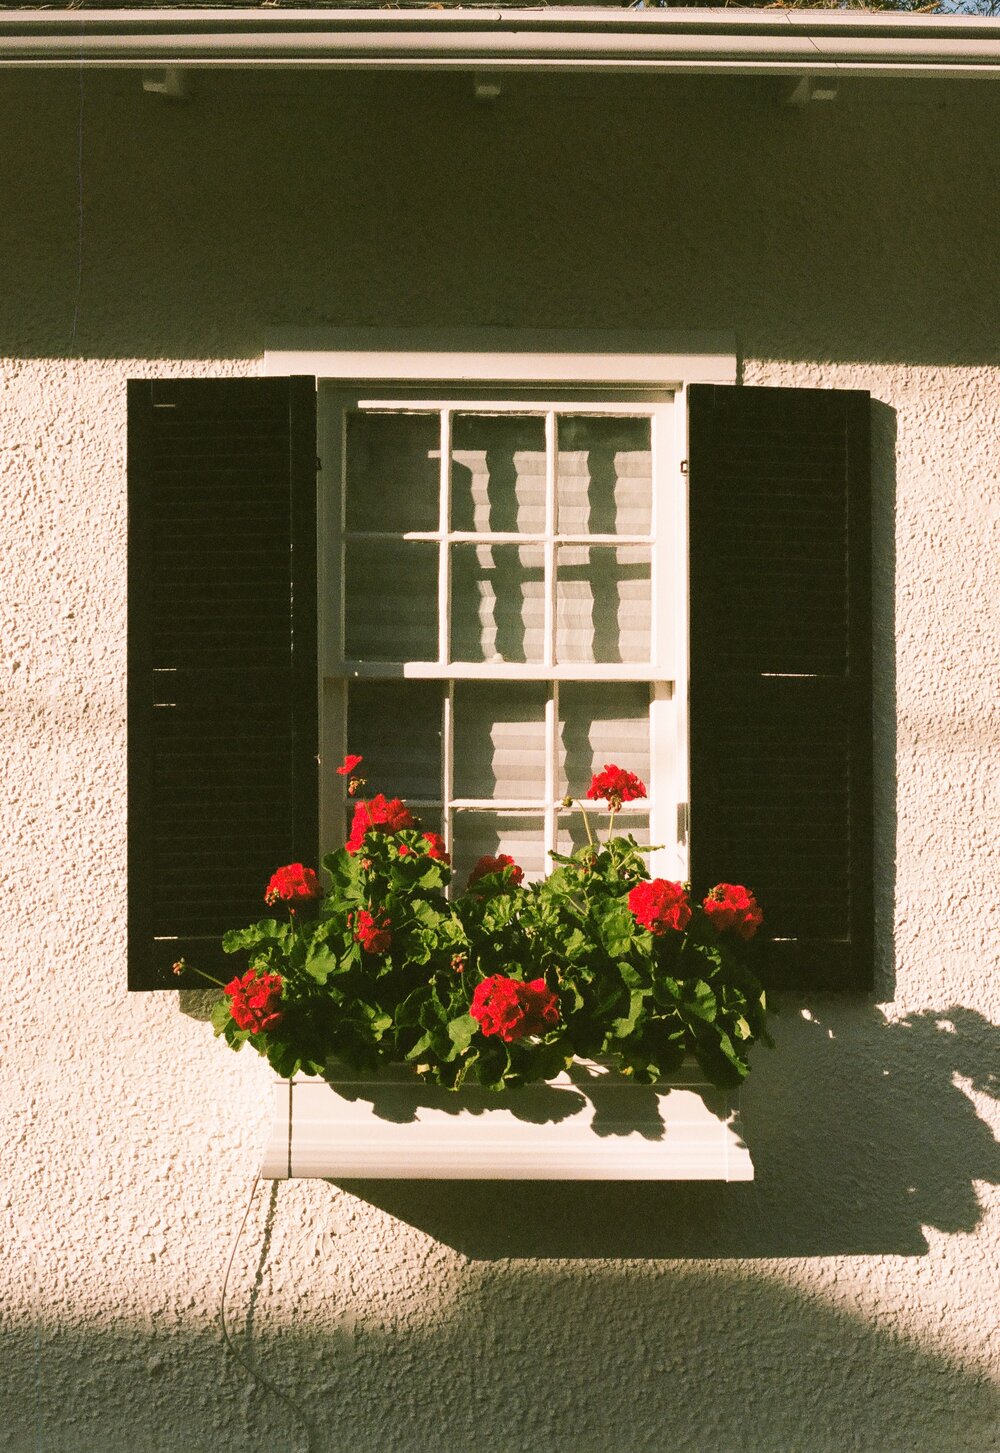 Geraniums in a window garden